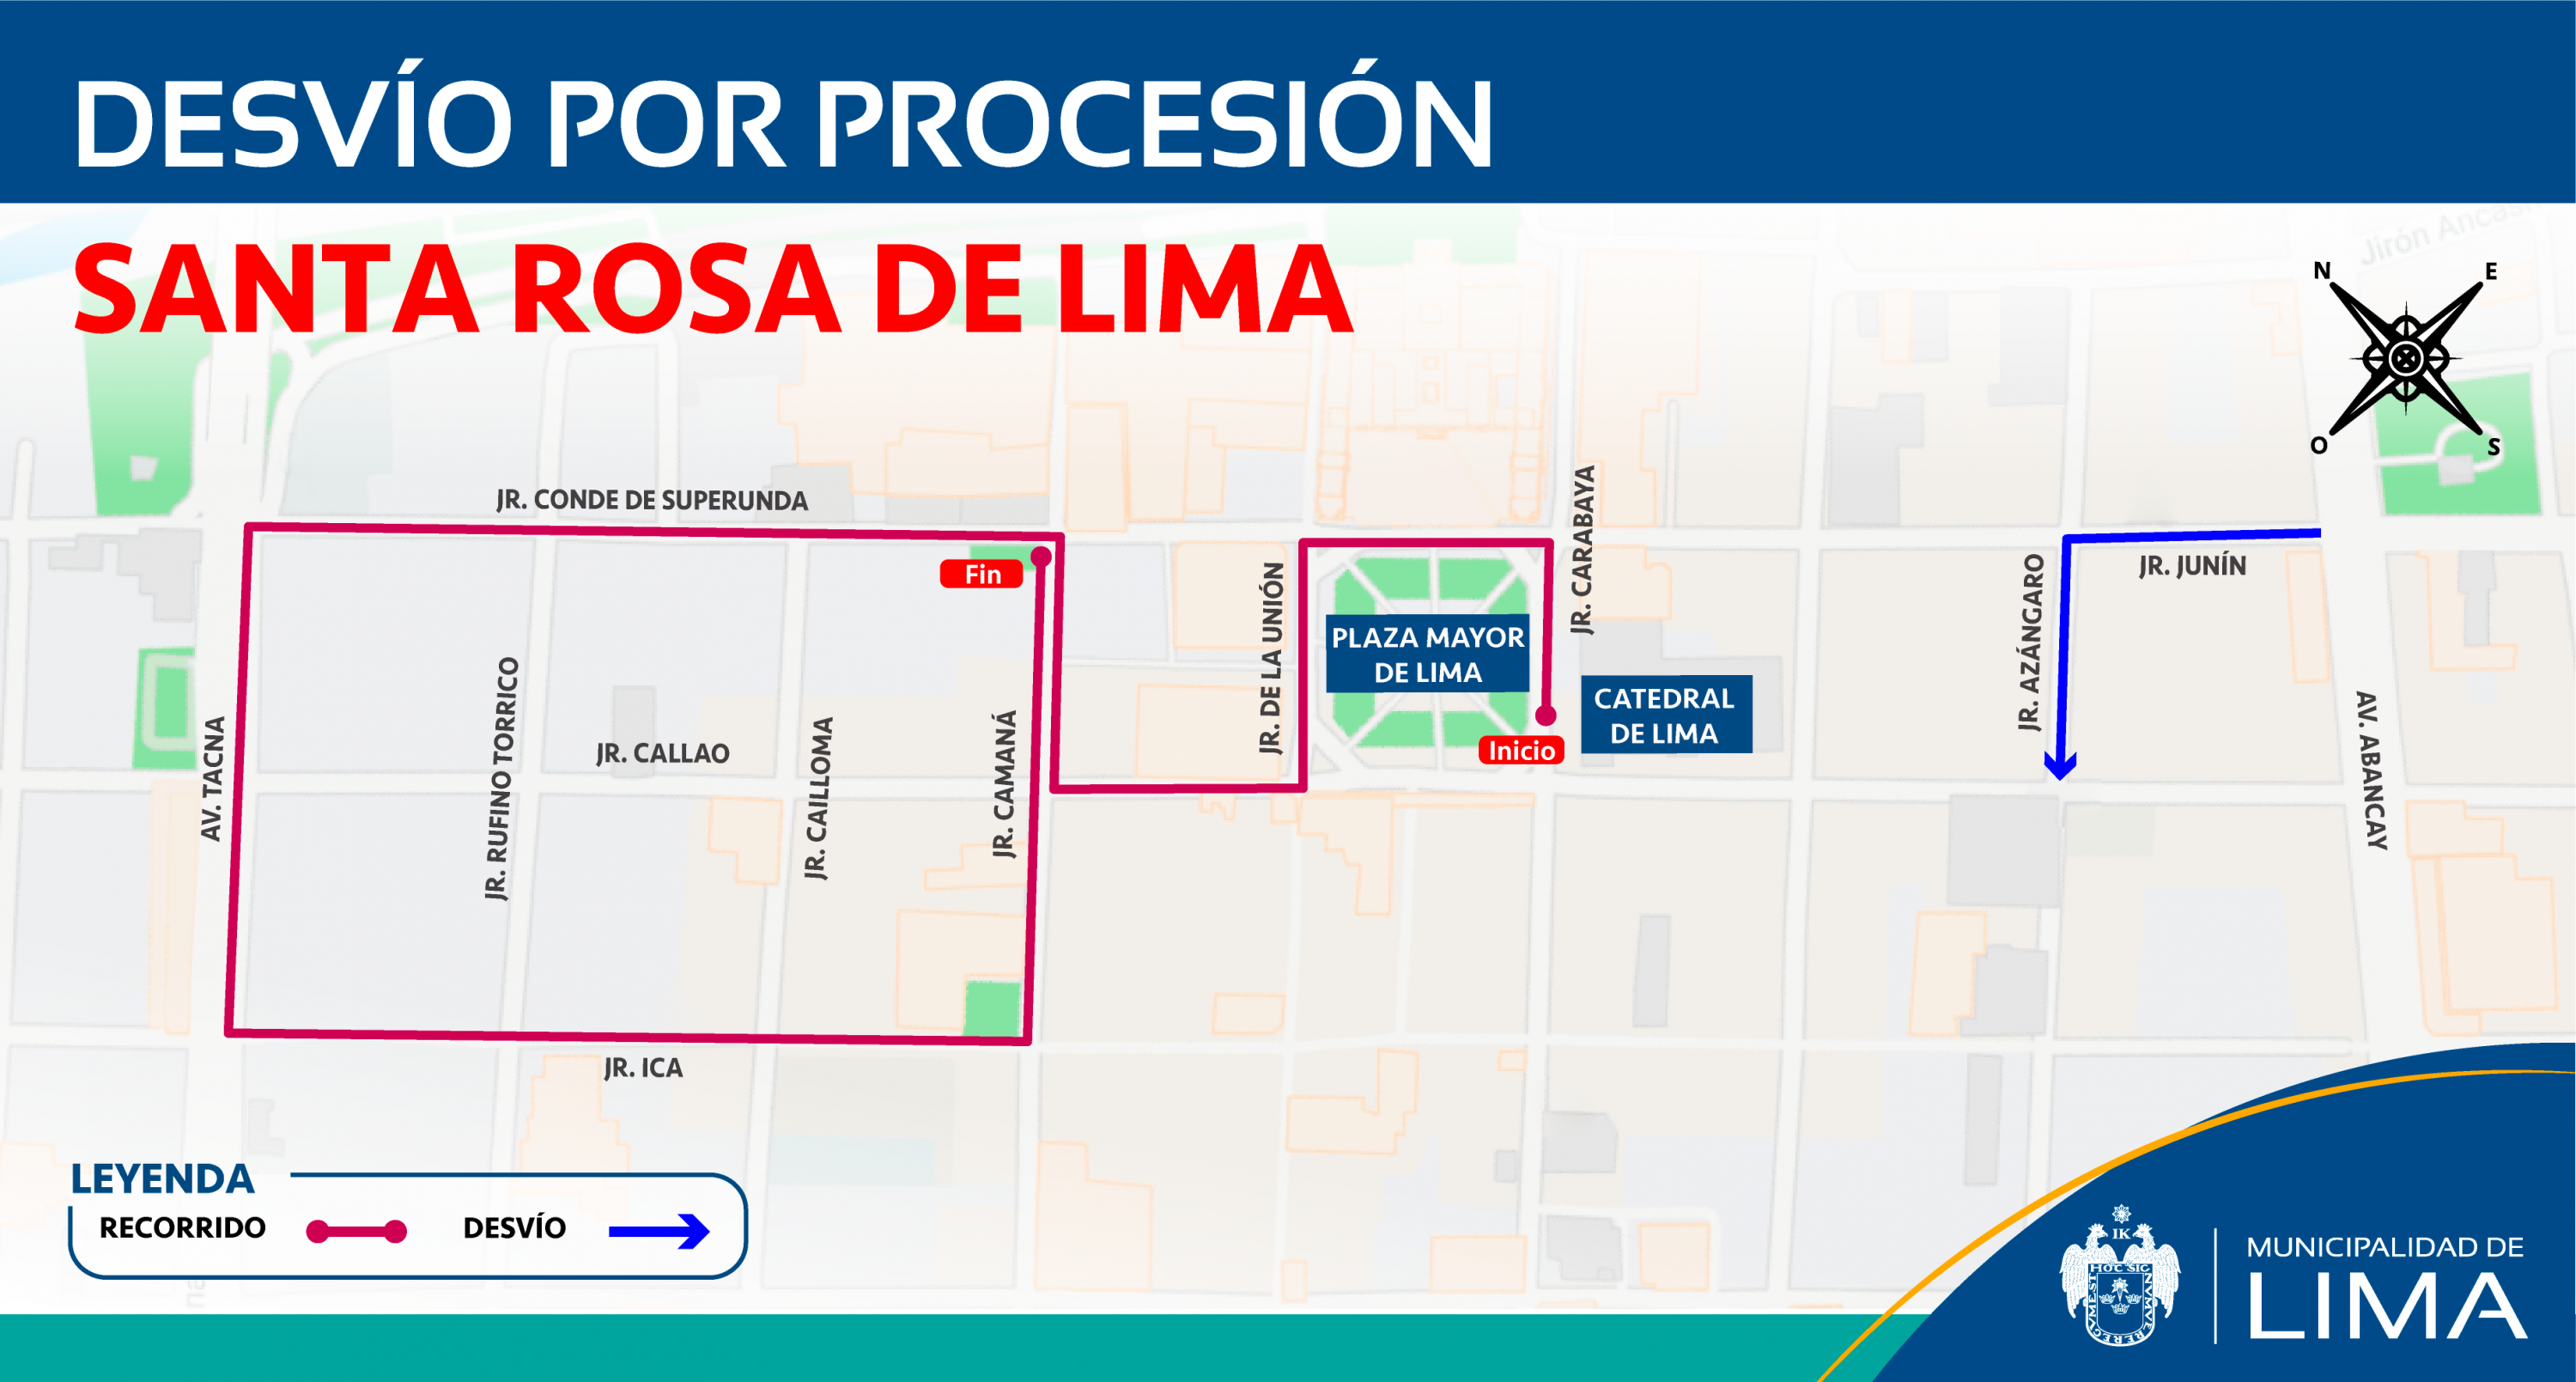 Municipalidad de Lima detalla los desvíos que se aplicarán durante el jueves 29 y el viernes 30 durante la procesión de Santa Rosa de Lima.